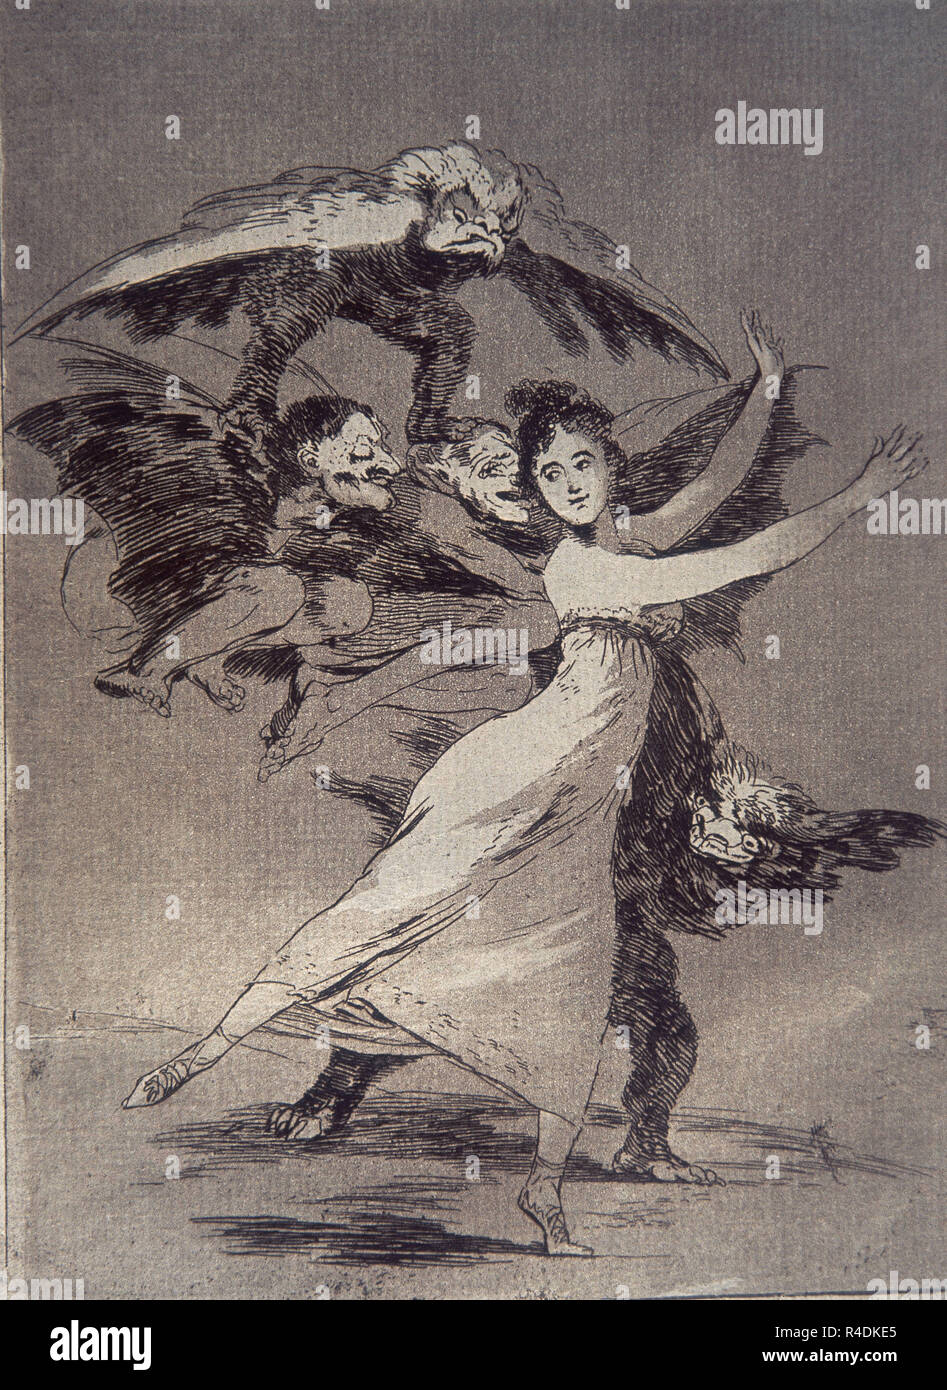 Sie werden nicht entfliehen, Platte 72 der 'Los Caprichos' - 1799 - 217 x 152 mm - Radierung. Thema: Goya, Francisco de. Standort: Private Collection. MADRID. Spanien. Stockfoto